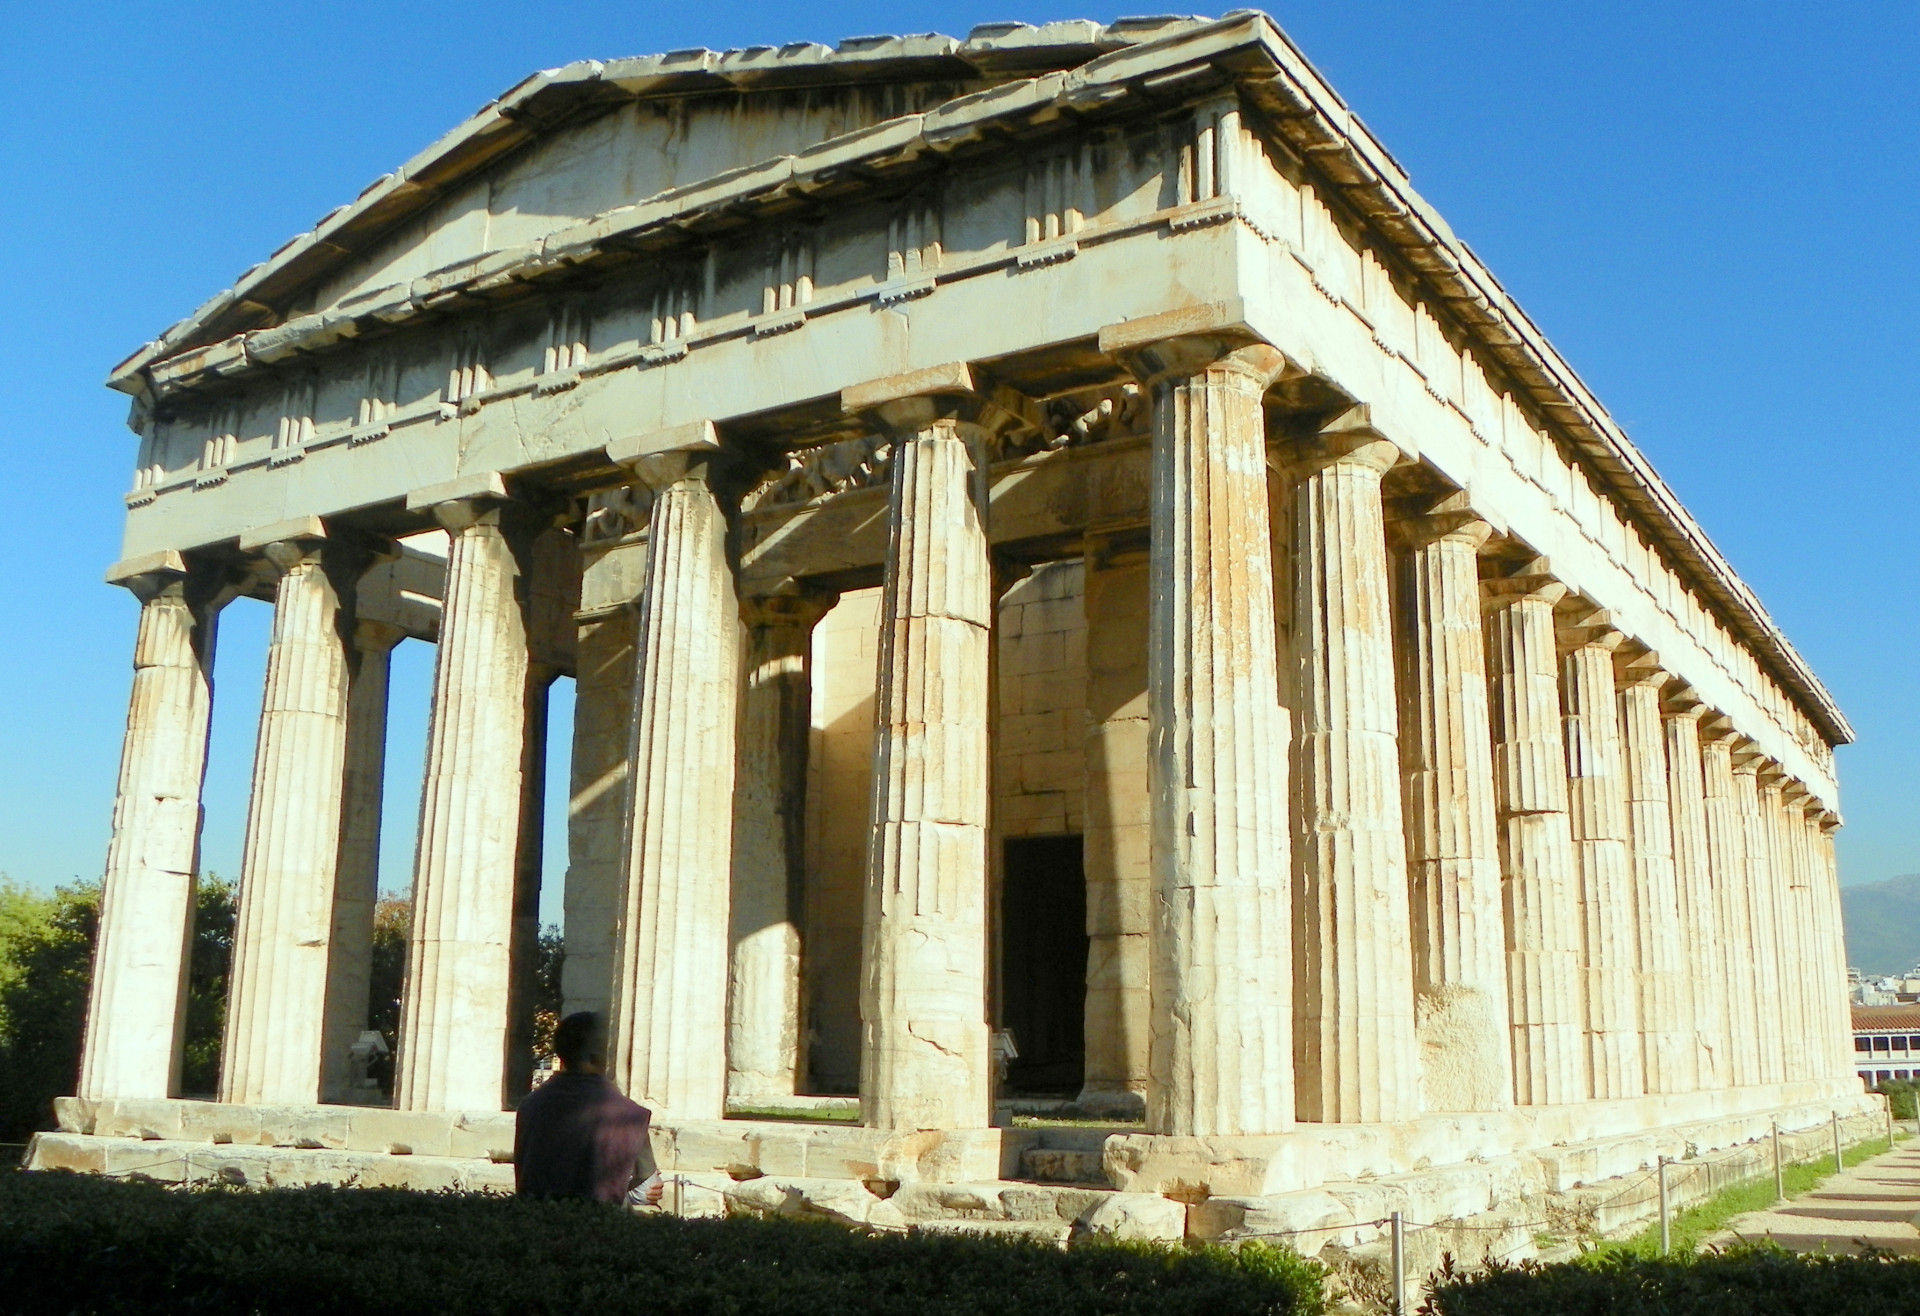 Dans la mythologie grecque, Héphaïstos était le dieu du feu. Le temple qui porte son nom se trouve à Athènes et selon les chercheurs, il s'agit du monument le mieux préservé de la Grèce antique.<p><a href="https://www.msn.com/fr-fr/community/channel/vid-7xx8mnucu55yw63we9va2gwr7uihbxwc68fxqp25x6tg4ftibpra?cvid=94631541bc0f4f89bfd59158d696ad7e">Suivez-nous et accédez tous les jours à du contenu exclusif</a></p>